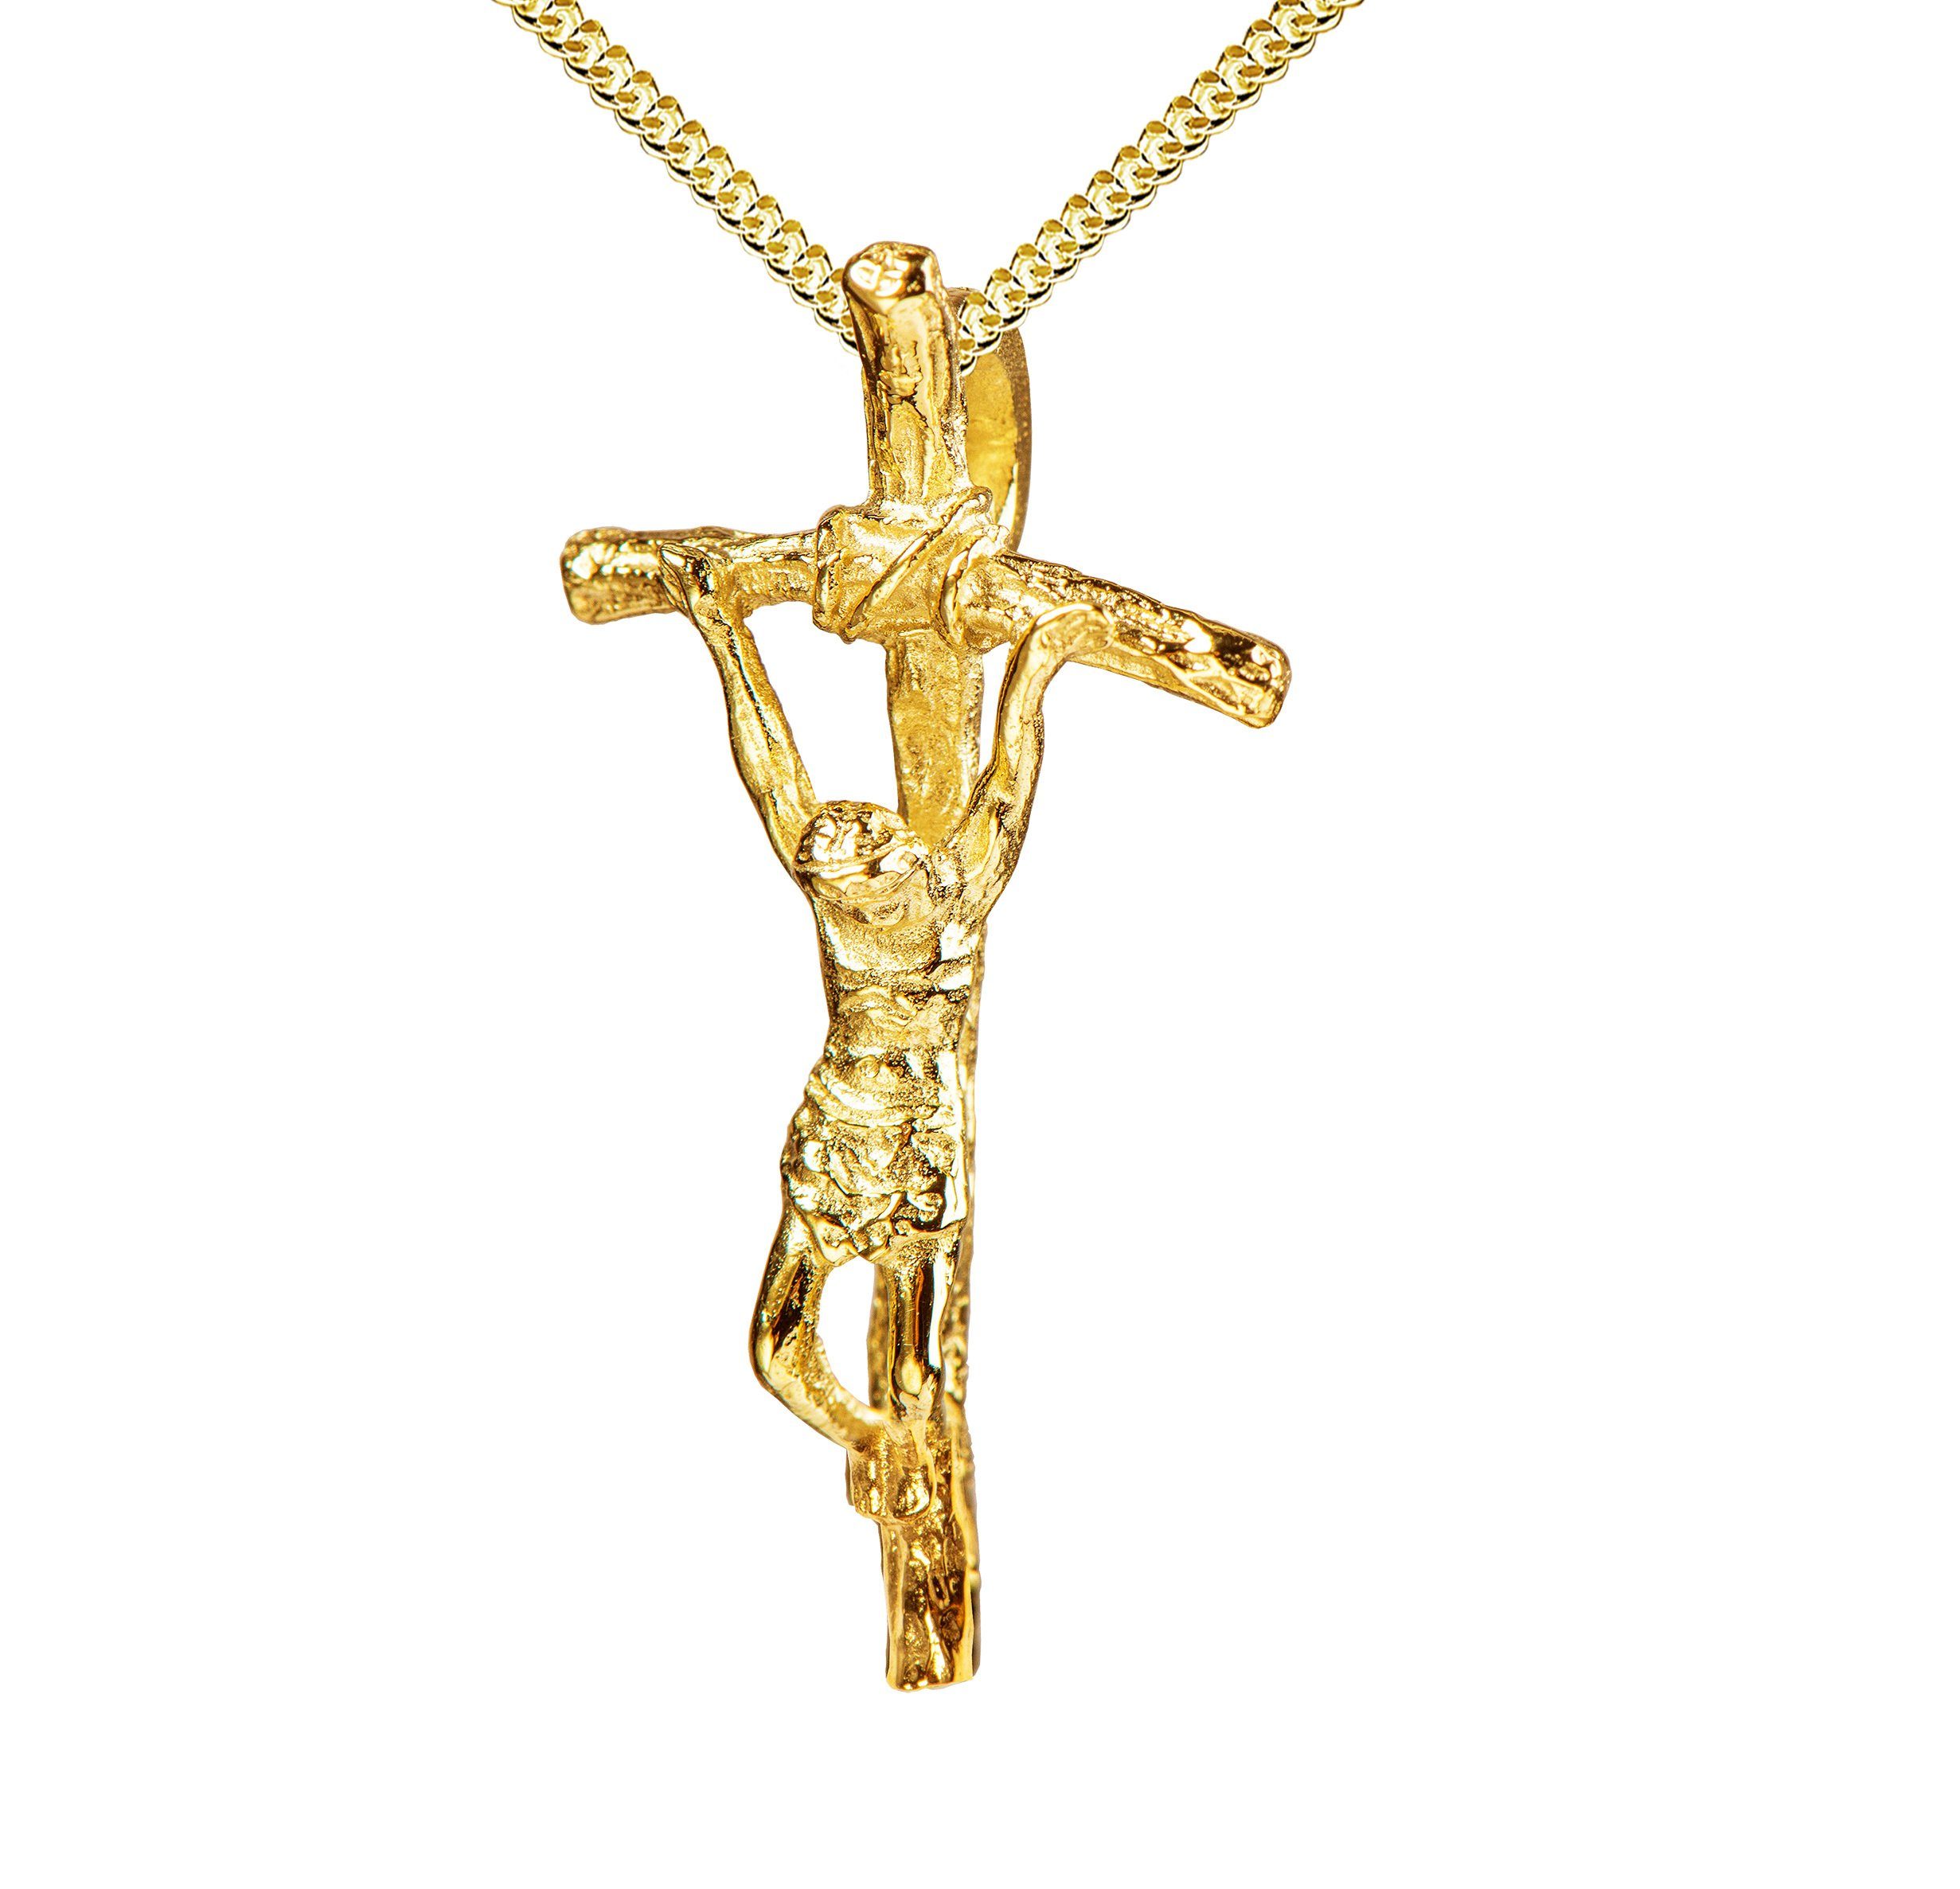 JEVELION Kreuzkette Kruzifix Anhänger 333 Gold - Made in Germany (Goldkreuz, für Damen und Herren), Mit Kette vergoldet- Länge wählbar 36 - 70 cm oder ohne Kette.